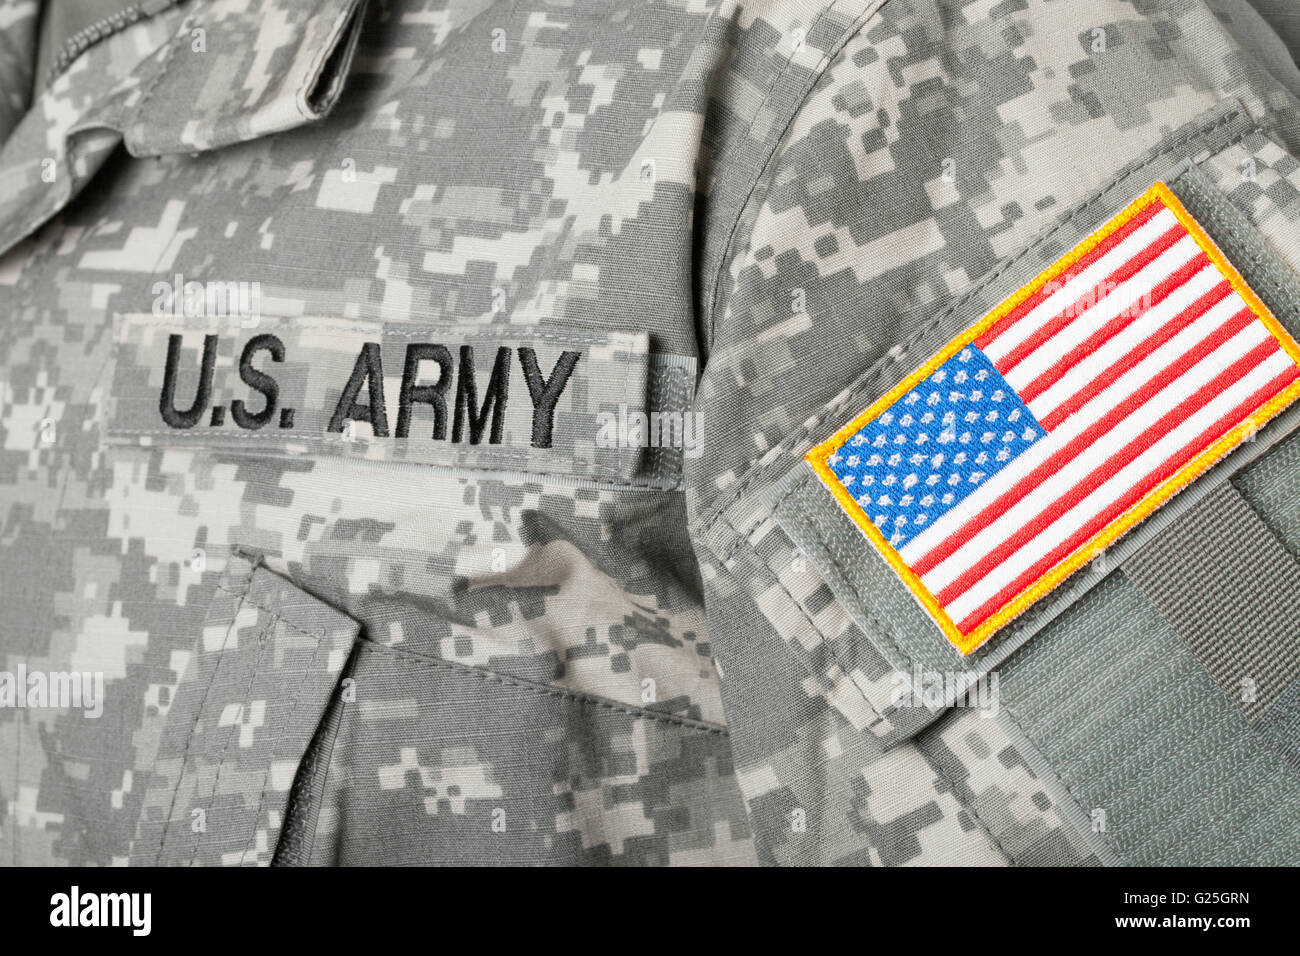 USA flag U.S. ARMY patch on military uniform Stock Photo - Alamy